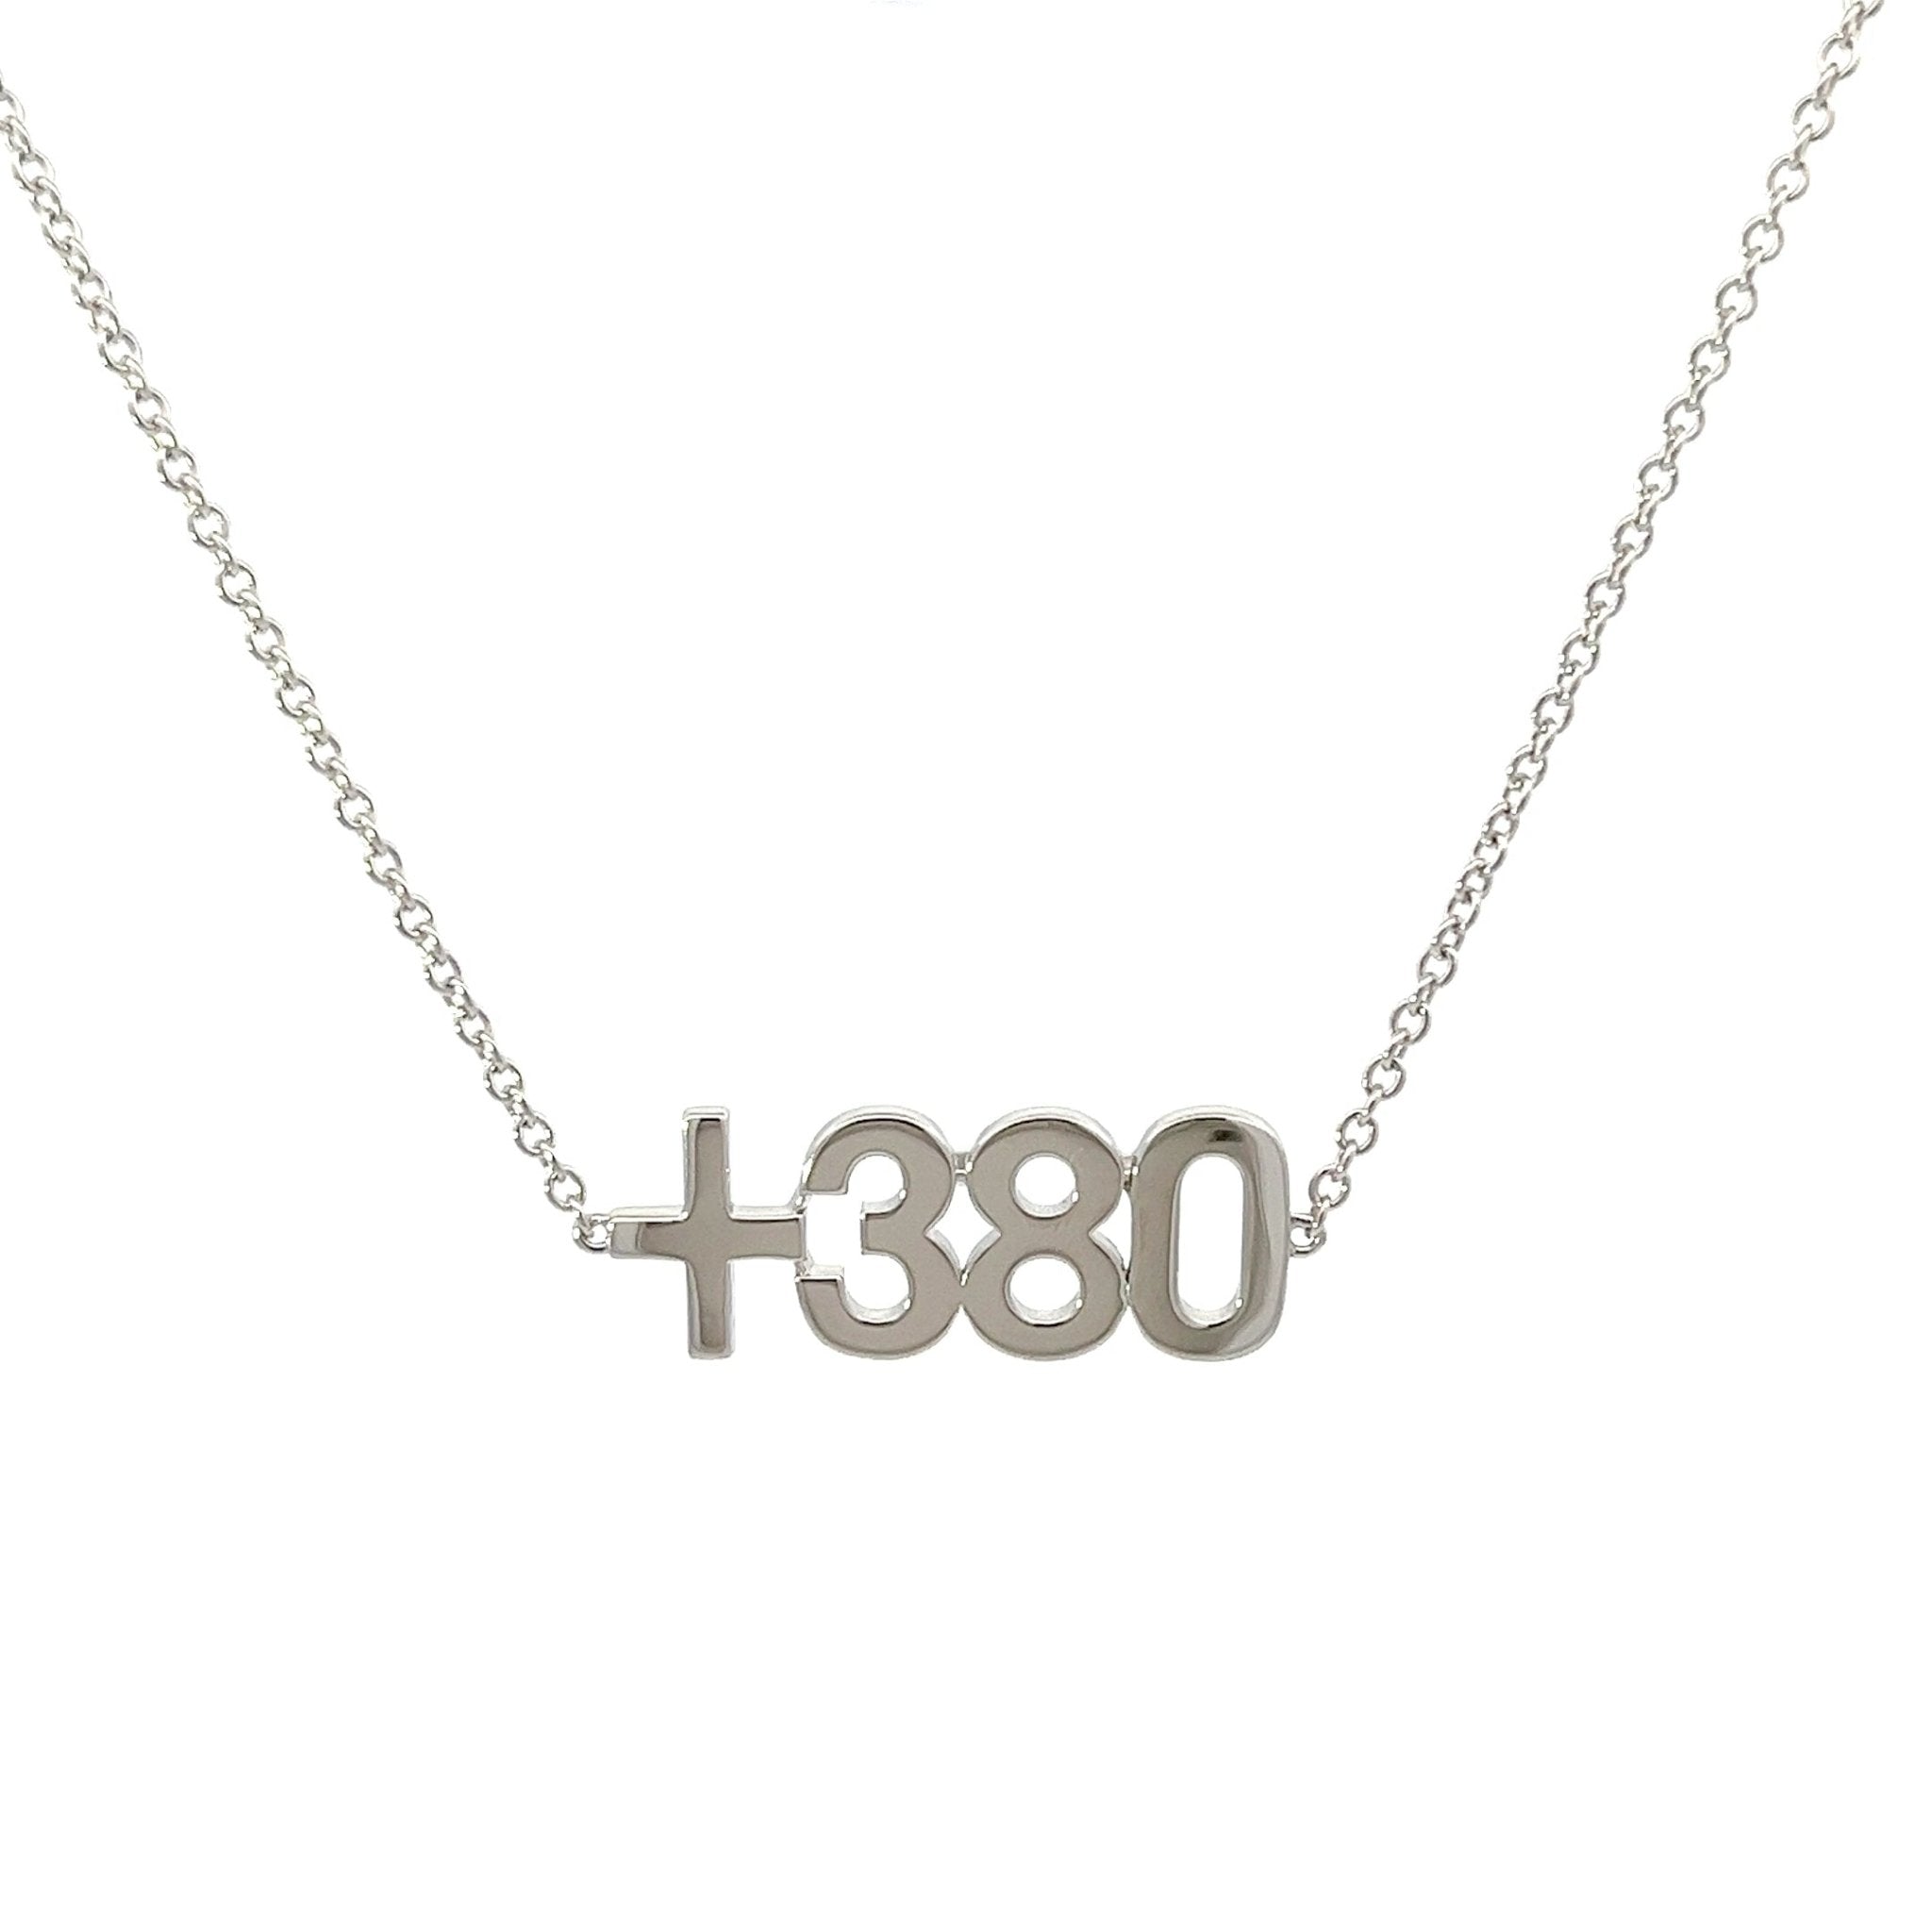 +380 Ukrainian Code Bracelet by Natkina